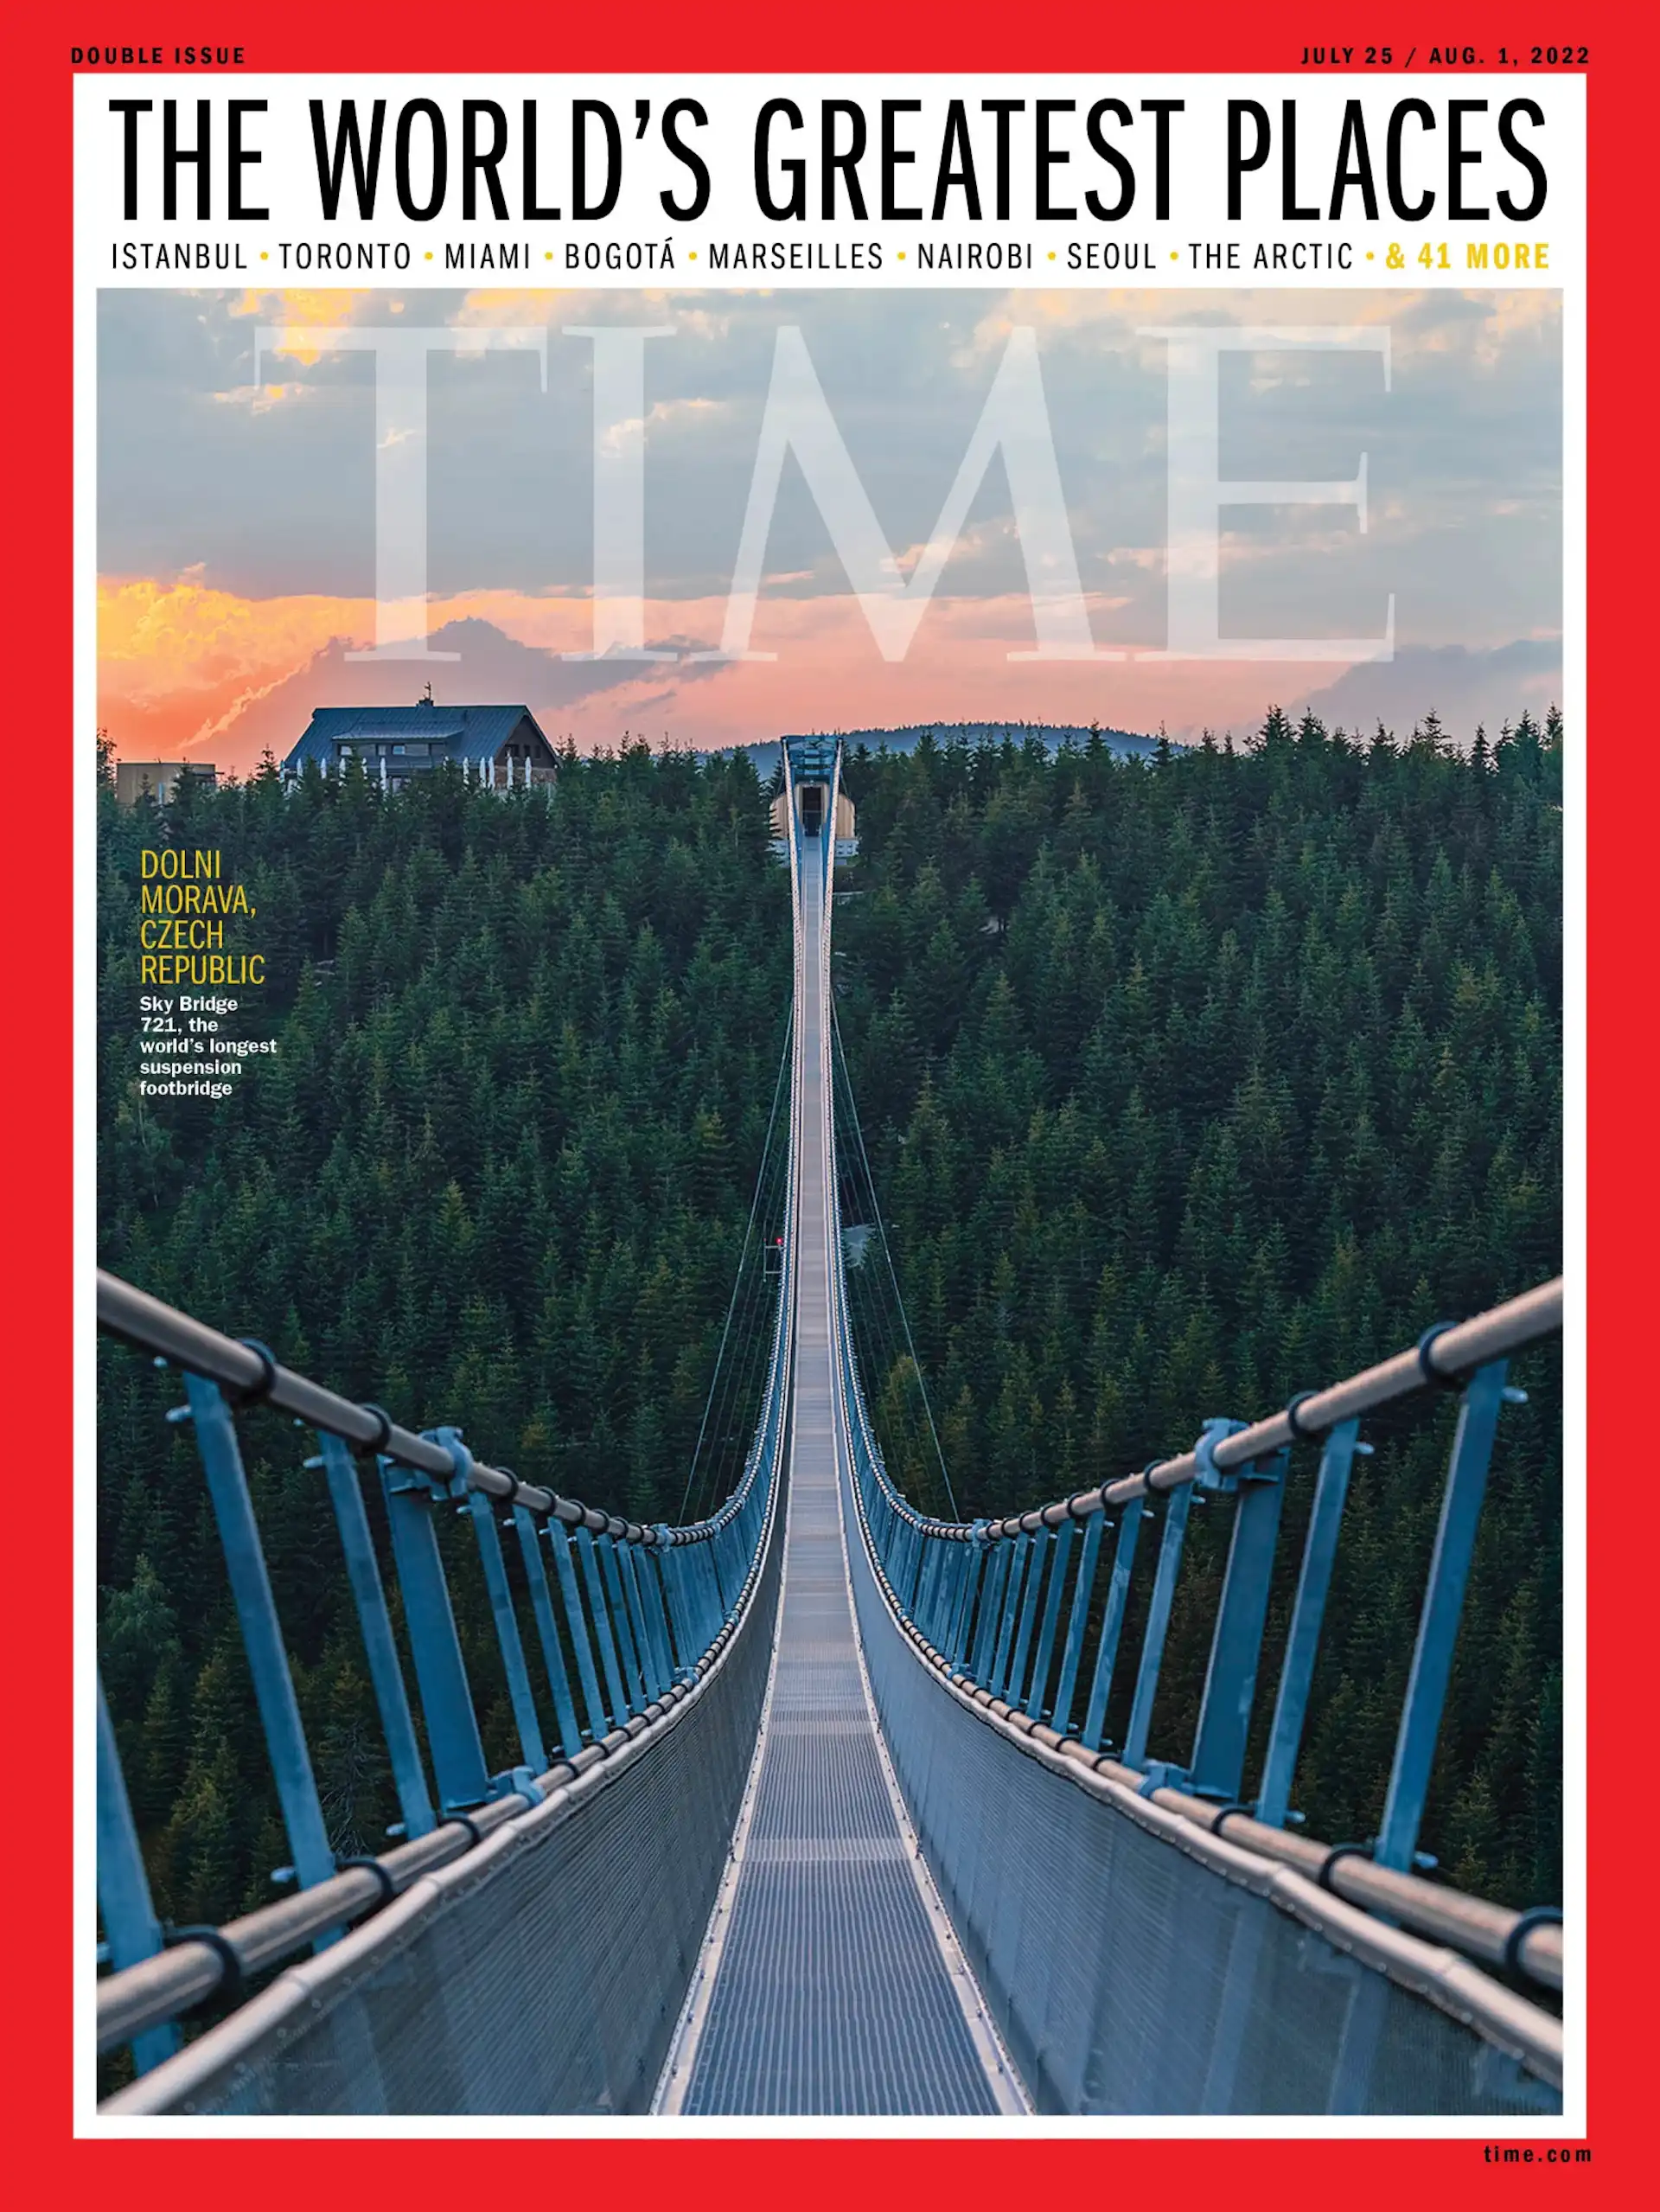 Los mejores lugares del mundo para viajar en 2022 según la revista Time